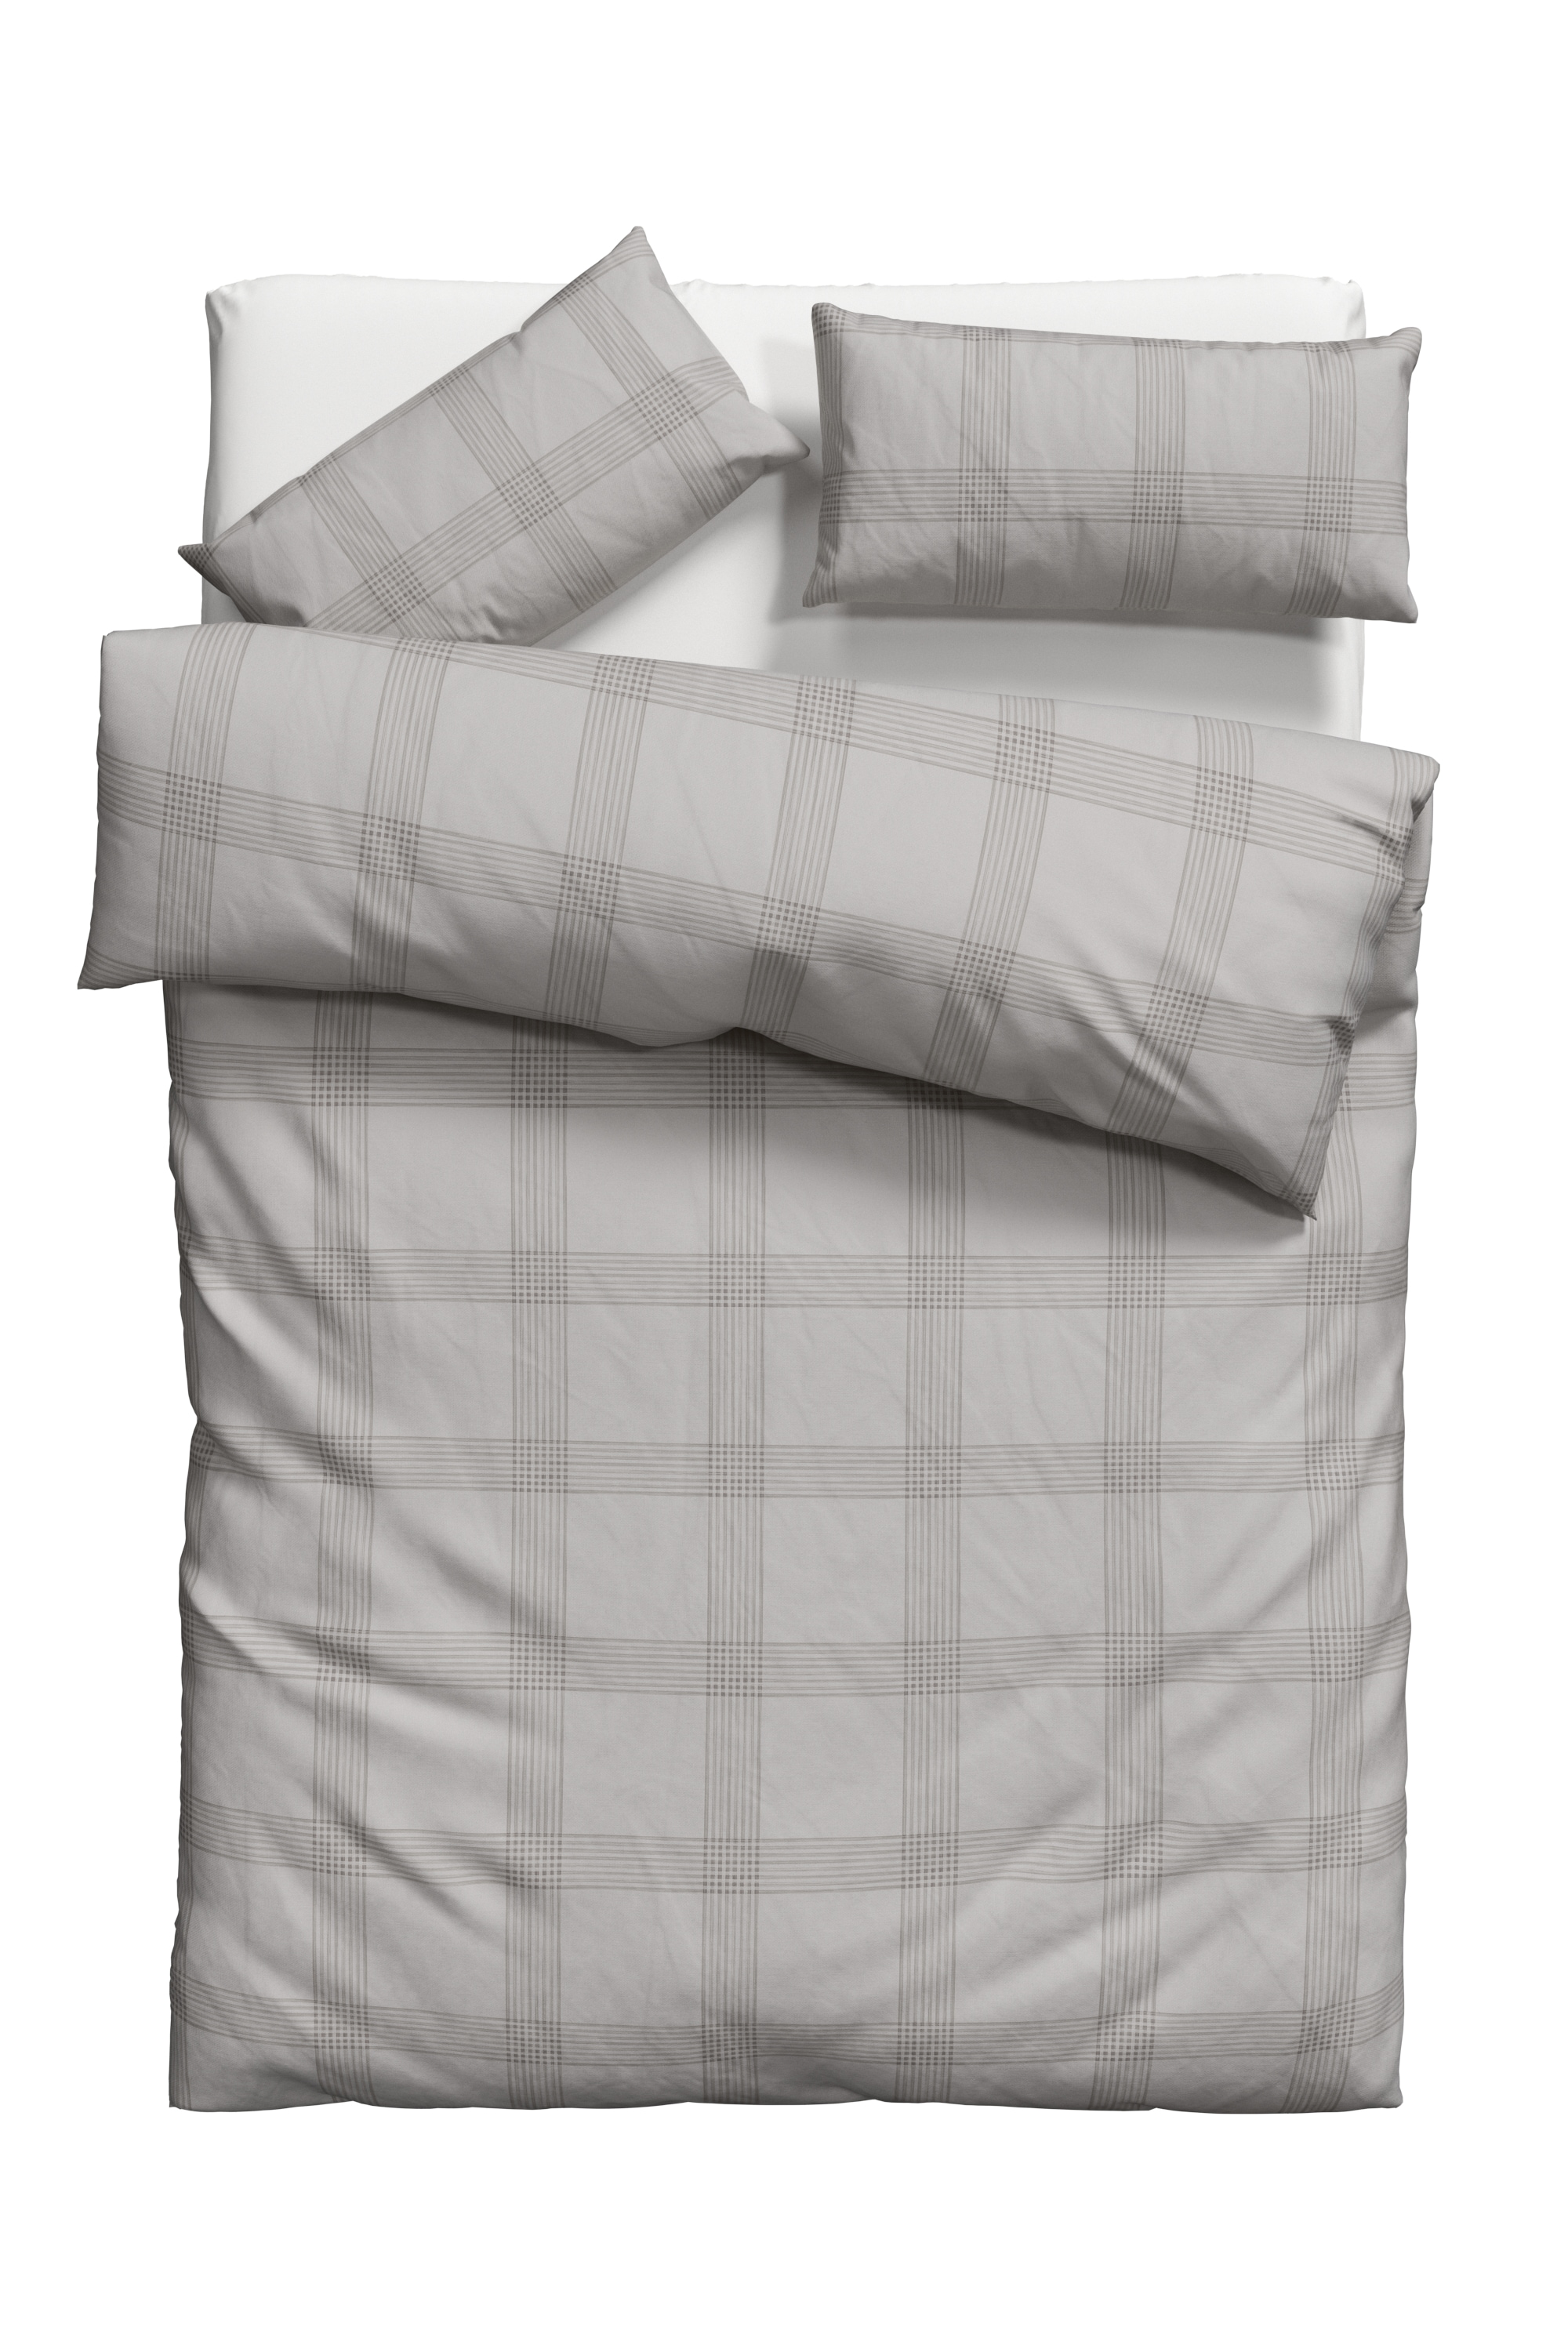 GOODproduct Bettwäsche »Check in Gr. 135x200, 155x220 oder 200x200 cm«, (2 tlg.), Bettwäsche aus Bio-Baumwolle, nachhaltige Bettwäsche im Karo-Design